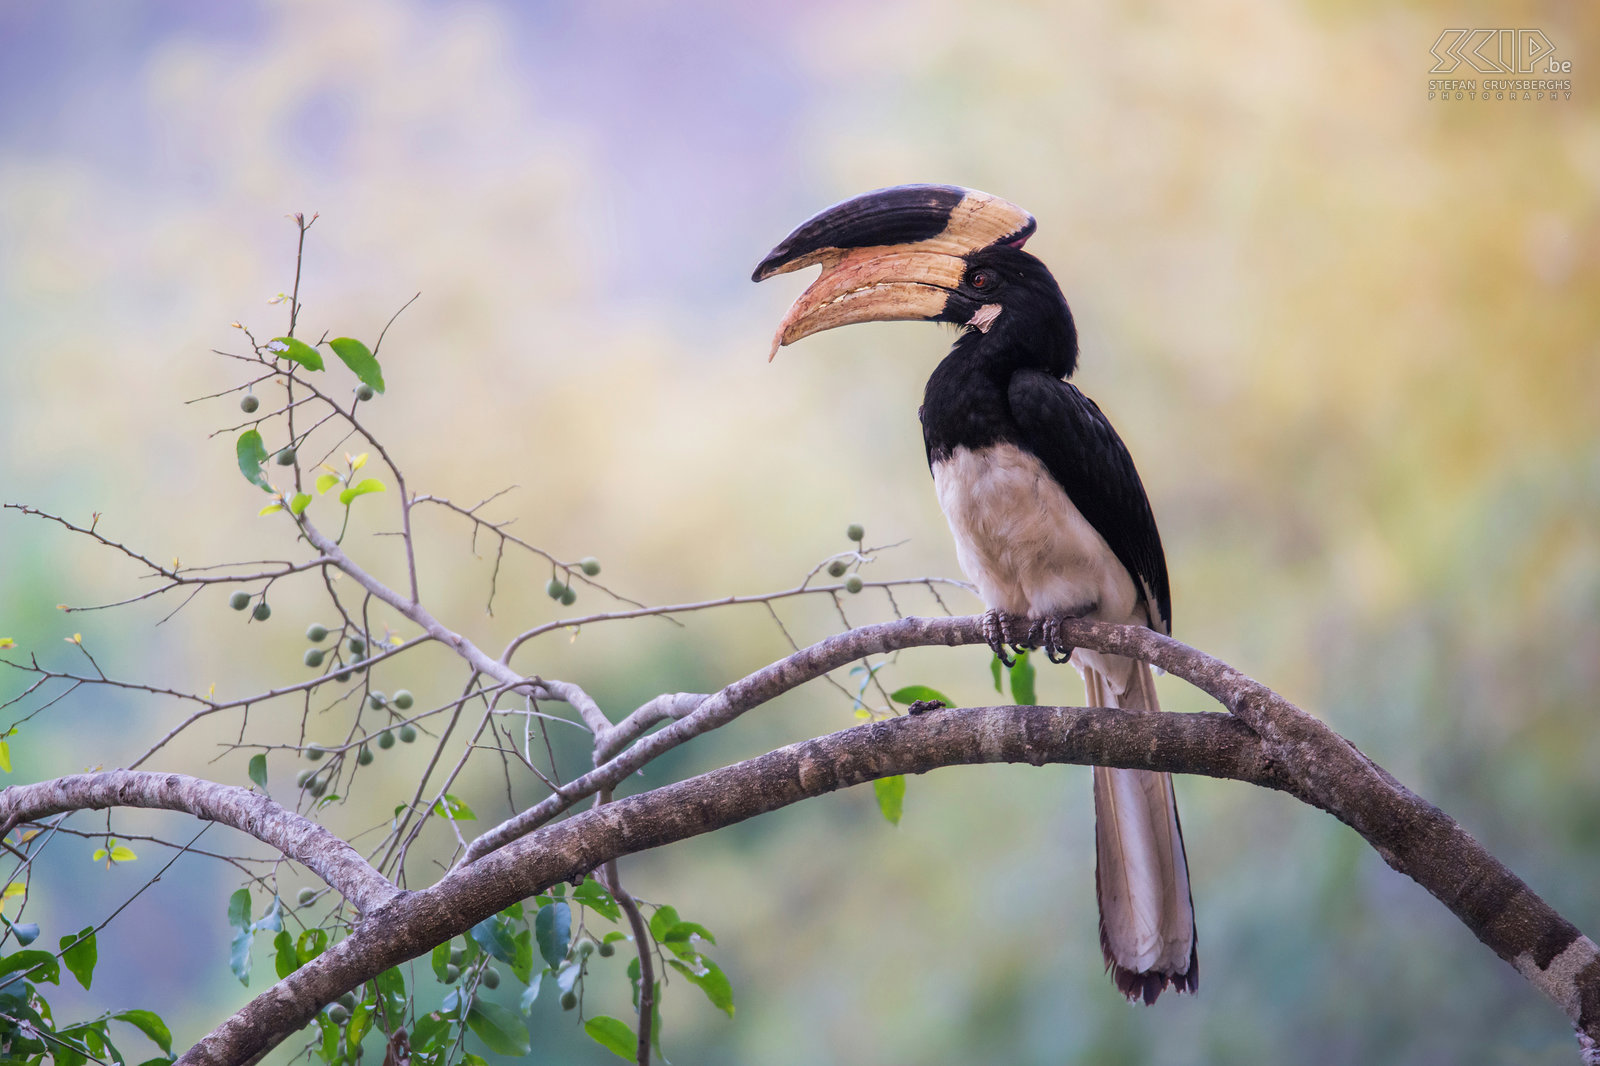 Dandeli - Malabarneushoornvogel Het Dandeli Wildlife Sanctuary is het tweede grootste park in de deelstaat Karnataka. We logeerden vlak aan de Kali rivier en in deze regio leven vrij veel neushoornvogels. 's Morgens zagen we Malabarneushoornvogels in grote getalen overvliegen en 's avonds landen er enkelen in de bomen aan de rivier. De malabarneushoornvogel (Malabar pied hornbill, Anthracoceros coronatus) is 68 cm lang en heeft een indrukwekkende snavel met hoorn. Ze leven voornamelijk van wilde vruchten.  Stefan Cruysberghs